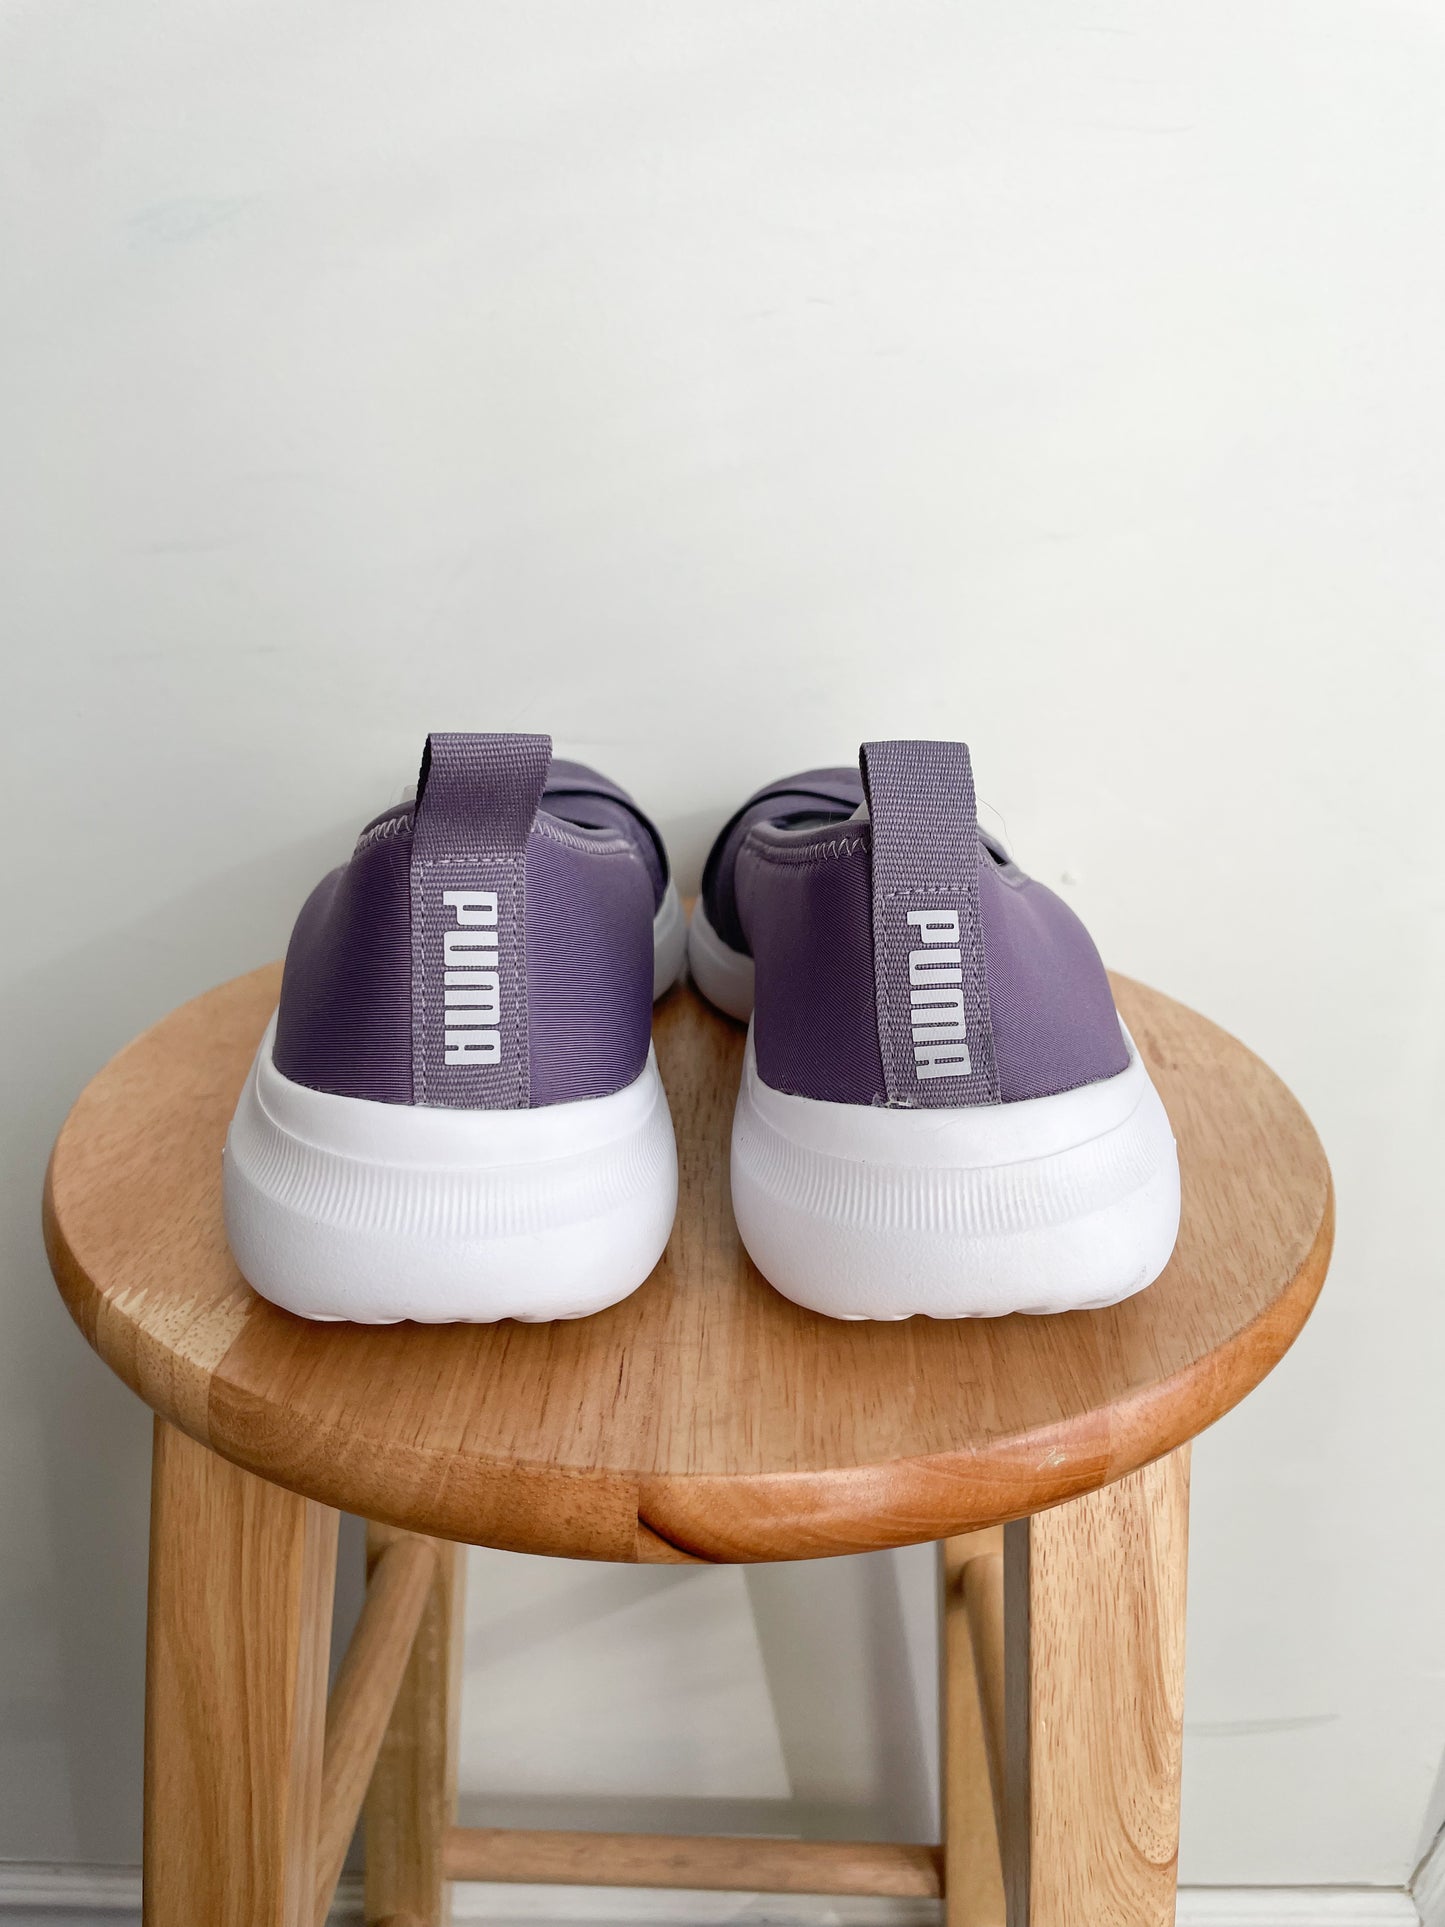 Puma Dusty Purple Soft Foam Walking Slip On Shoes - Size 8.5